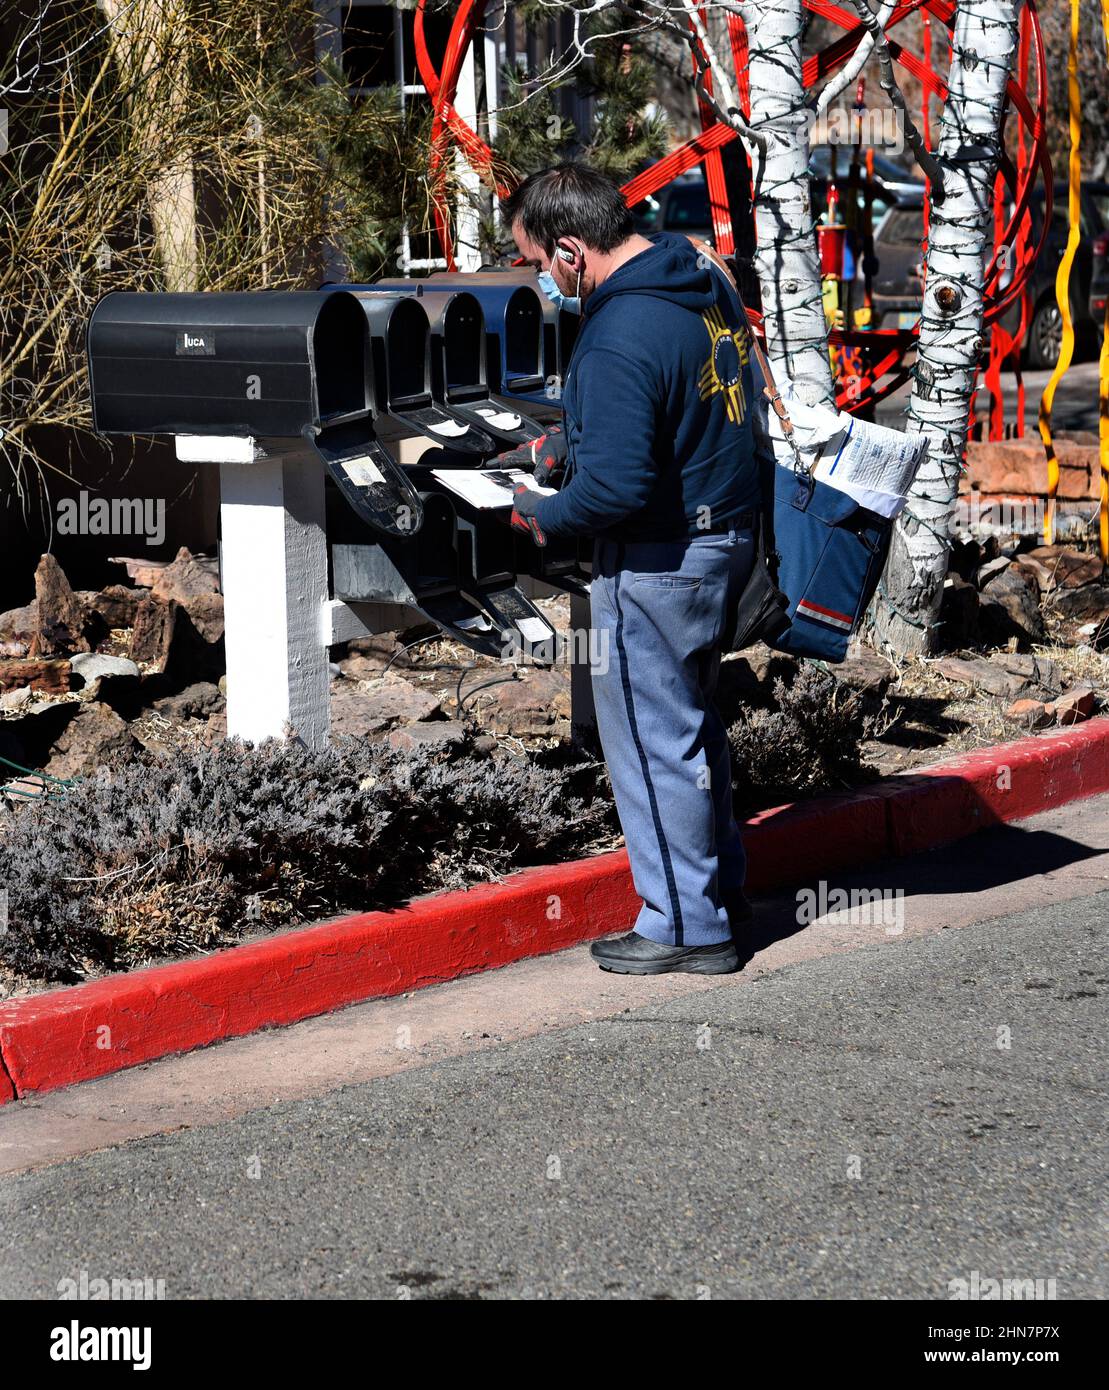 Un mailman américain ou un transporteur de lettres livre le courrier à une rangée de boîtes aux lettres à Santa Fe, Nouveau-Mexique. Banque D'Images